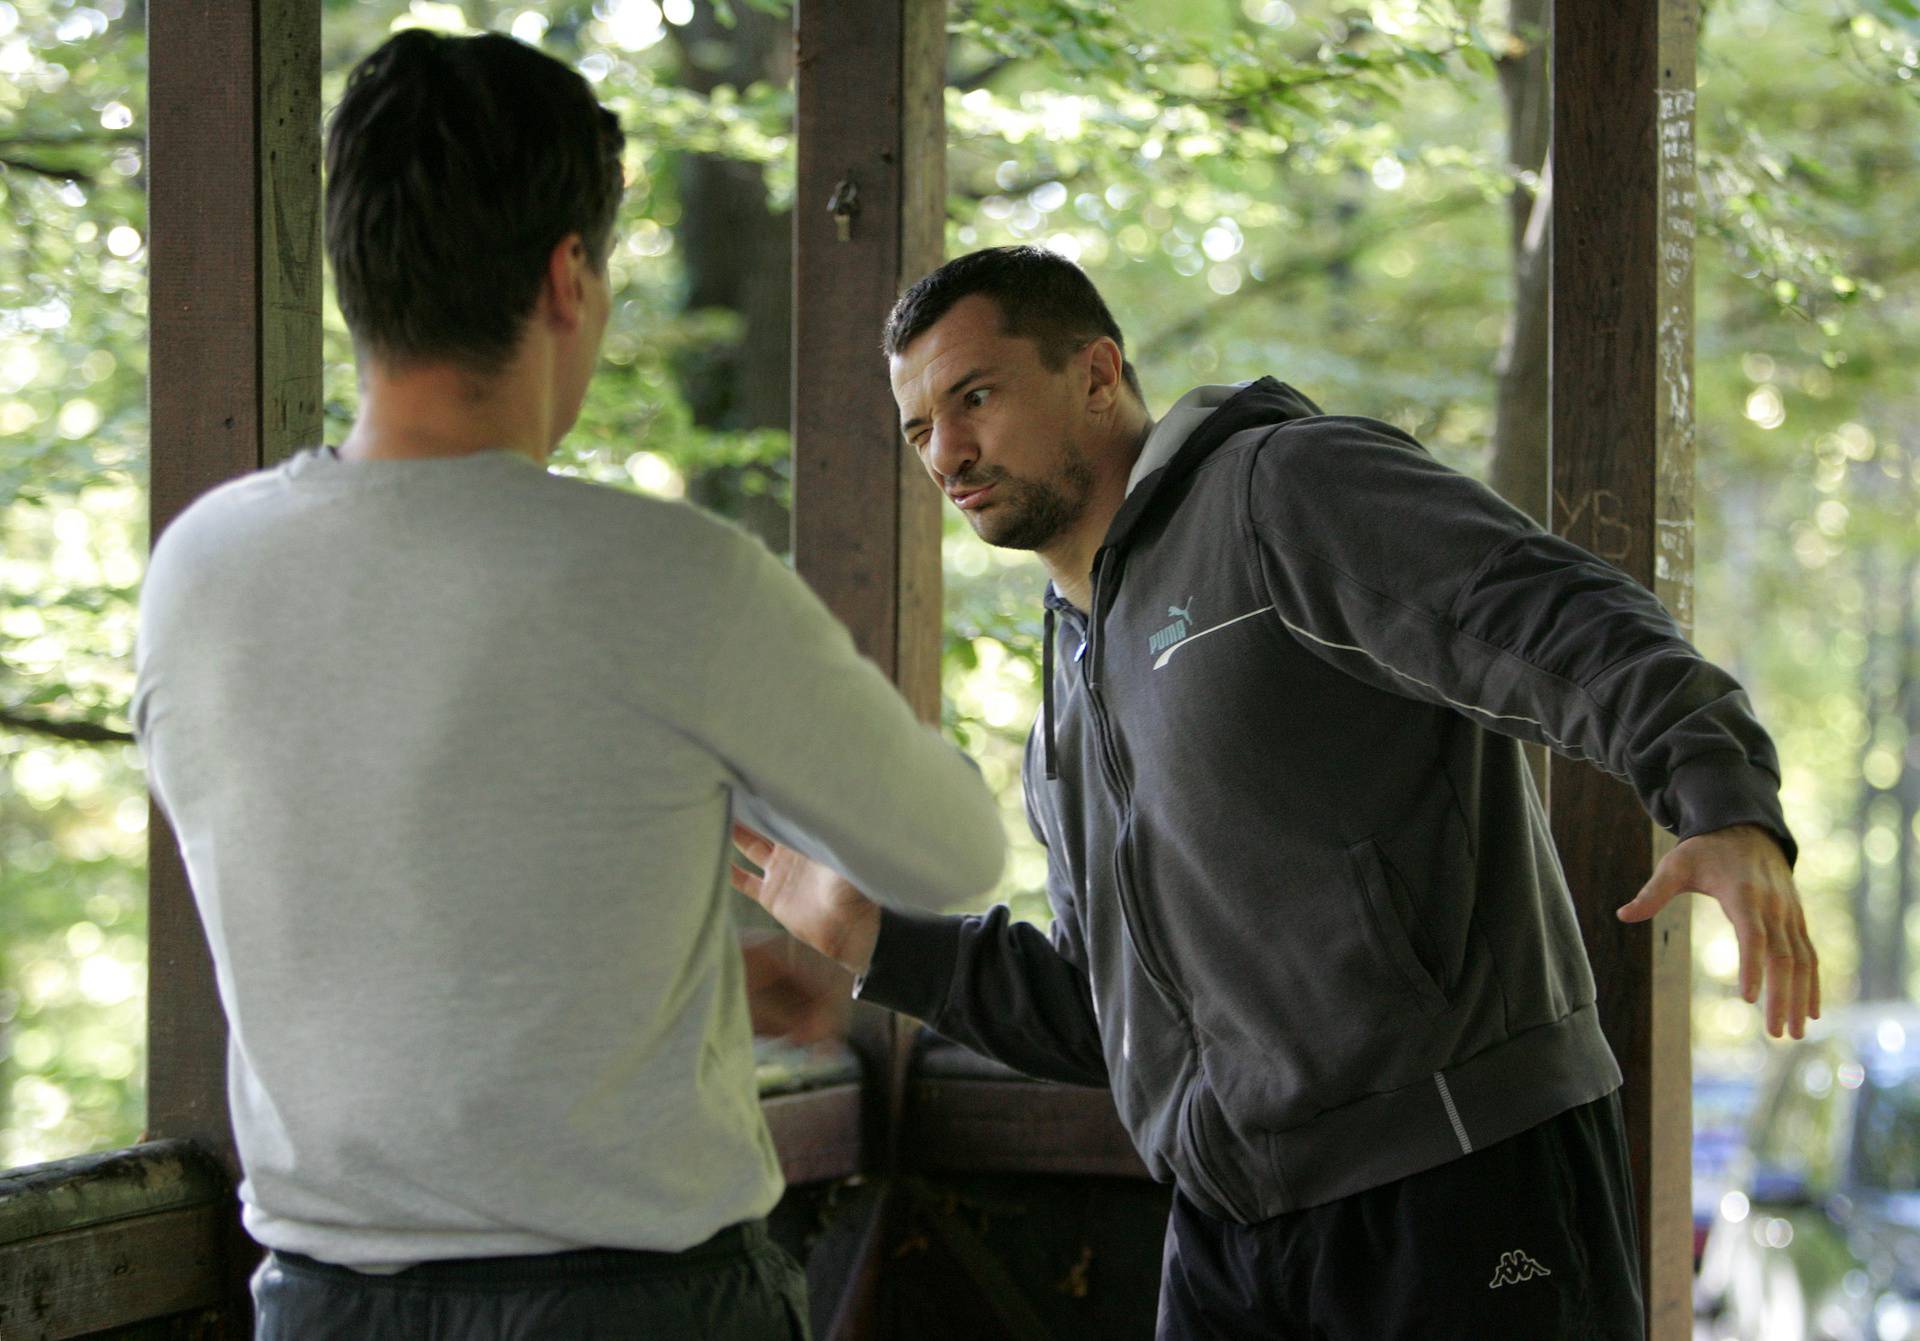 ARHIVA - 2007. Zoran Milanović i Mirko Filipović na treningu u Šestinama